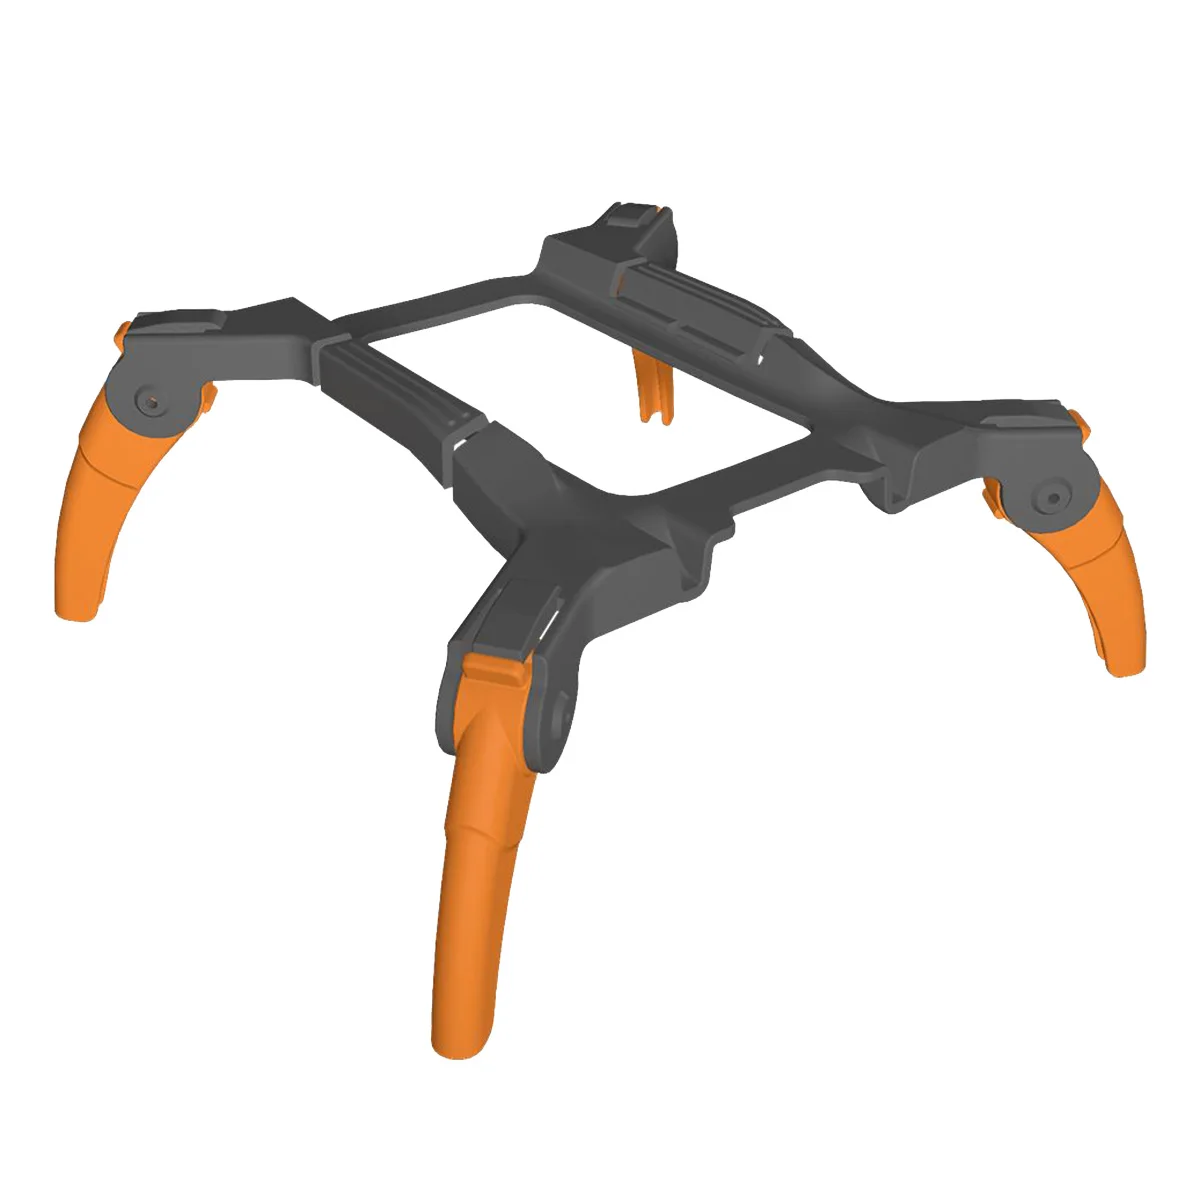 

Drone Landing Gear Protect Support Leg Propeller Cover for DJI Mini 2/SE/Mavic Mini Drone Accessories-Orange